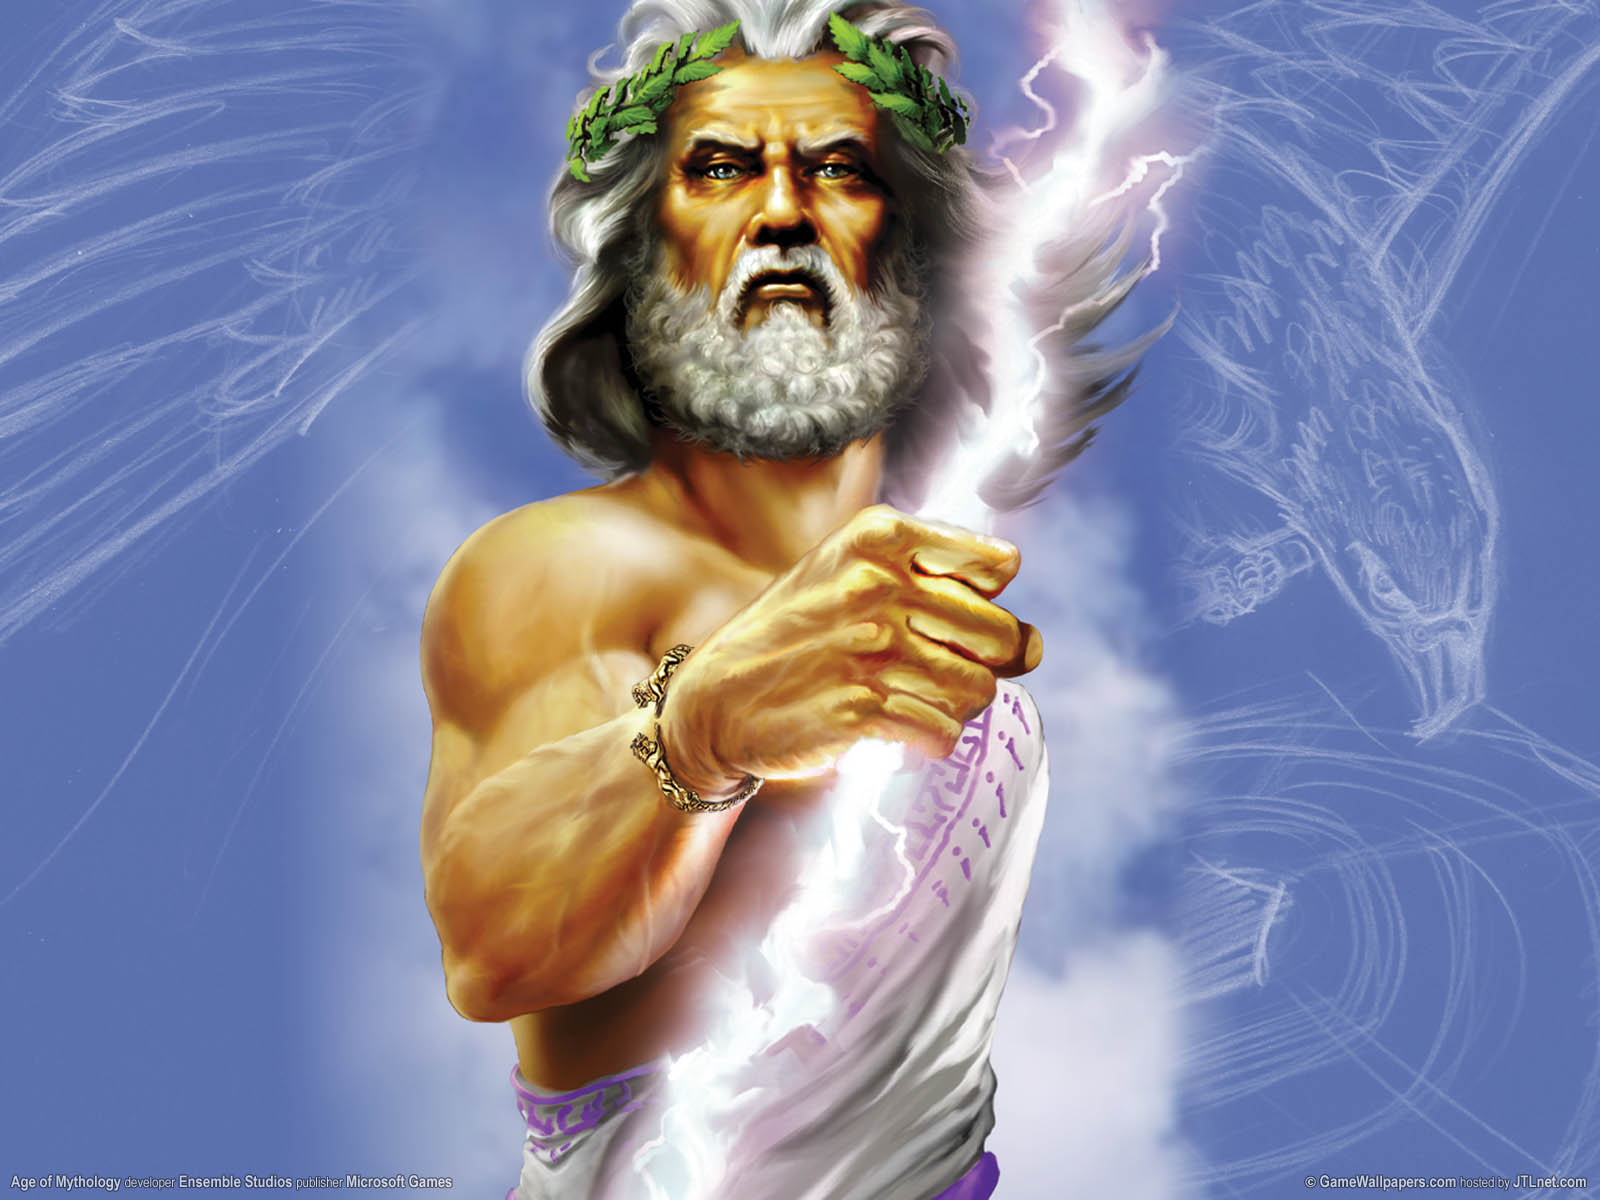 Age of Mythology fond d'cran 02 1600x1200